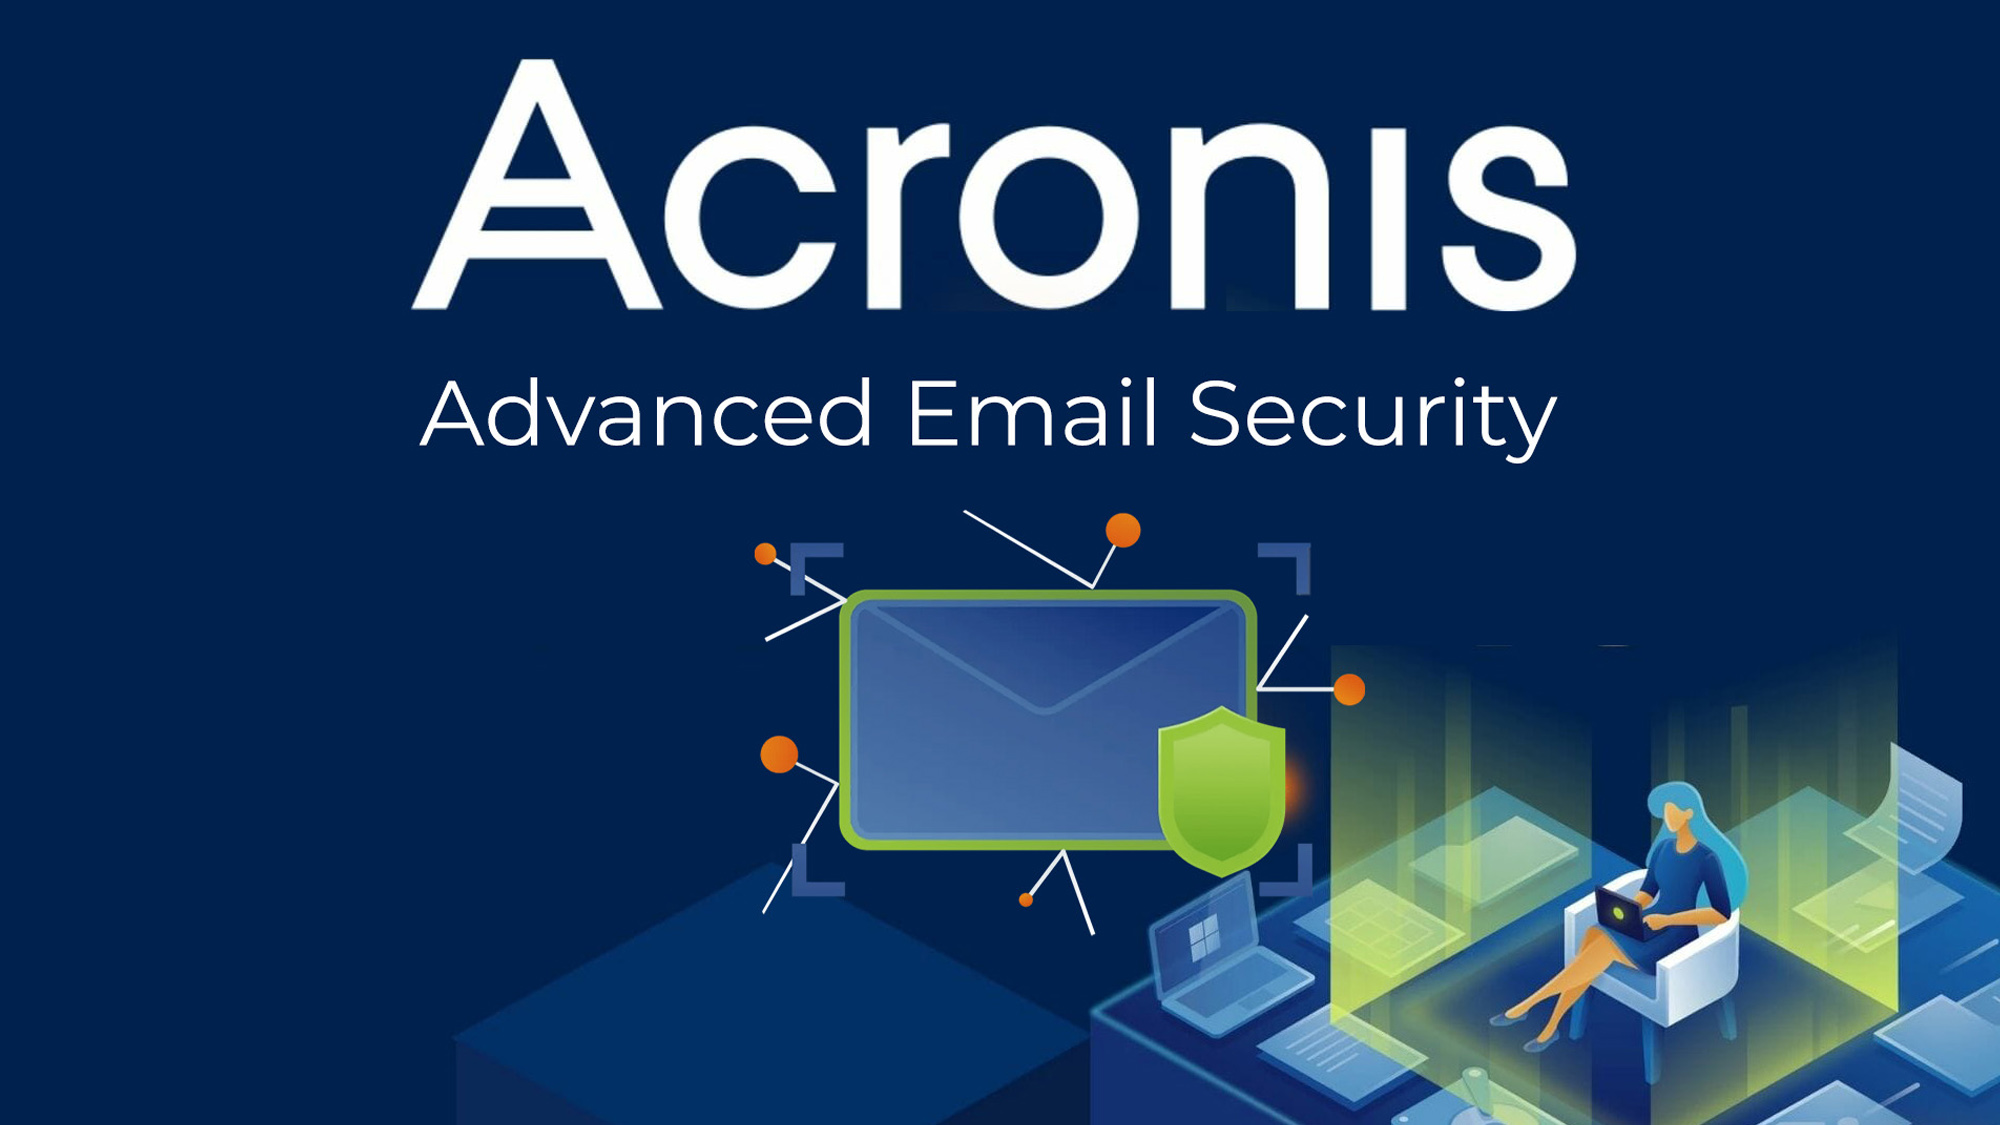 En este momento estás viendo Acronis Email Security, una solución que protege los correos electrónicos y la seguridad de los clientes